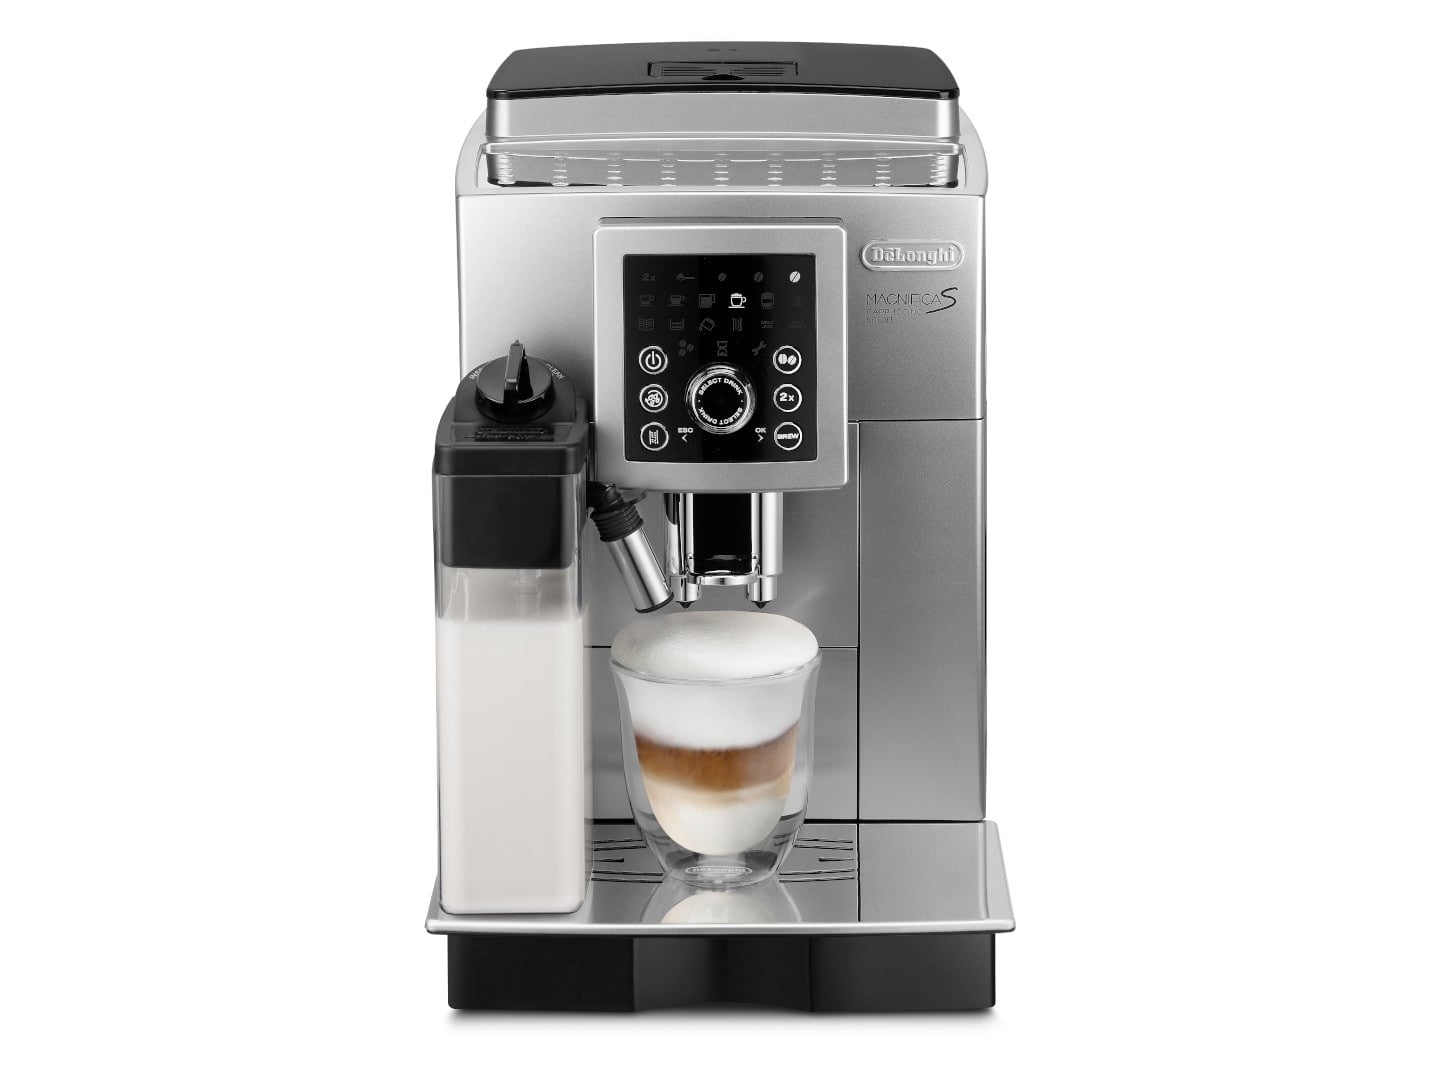 DeLonghi Magnifica S Smart Cappuccino Coffee Machine Maker - ECAM23270S